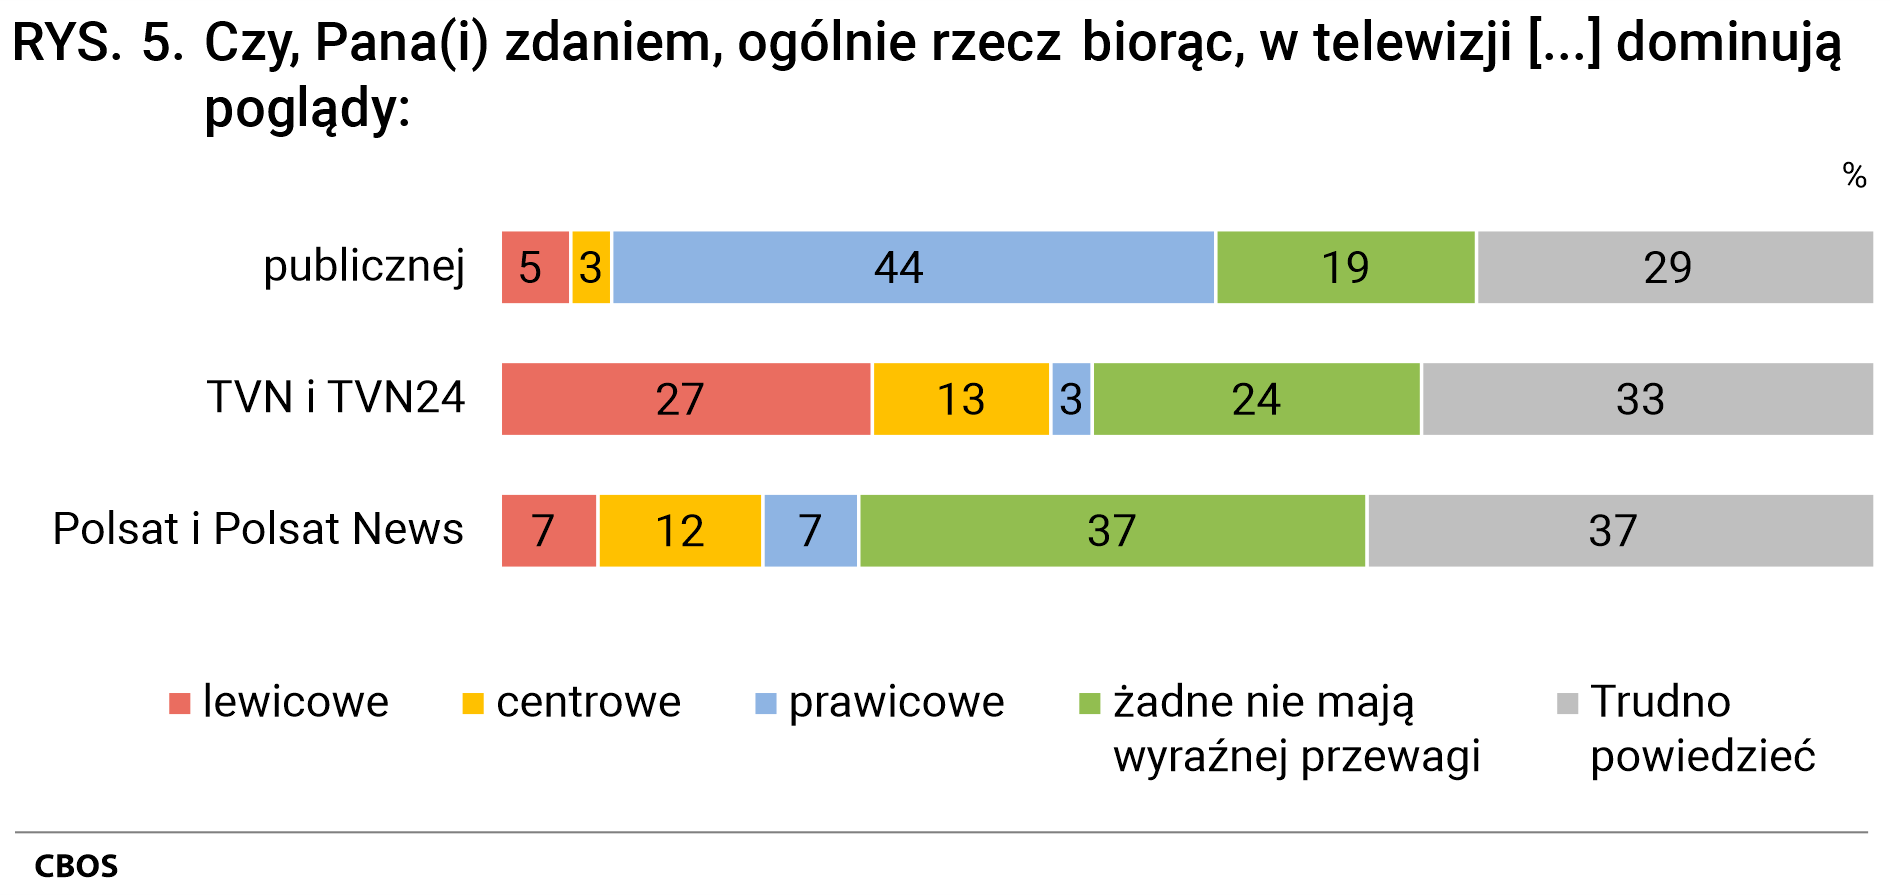 Rysunek 5 Czy, Pana(Pani) zdaniem, ogólnie rzecz biorąc, w telewizji publicznej dominują poglądy: lewicowe - 5%, centrowe - 3%, prawicowe - 44%, żadne nie mają wyraźnej przewagi - 19%, Trudno powiedzieć - 29%. w TVN i TVN24: lewicowe - 27%, centrowe - 13%, prawicowe - 3%, żadne nie mają wyraźnej przewagi - 24%, Trudno powiedzieć - 33%. w Polsat i Polsat News: lewicowe - 7%, centrowe - 12%, prawicowe - 7%, żadne nie mają wyraźnej przewagi - 37%, Trudno powiedzieć - 37%.